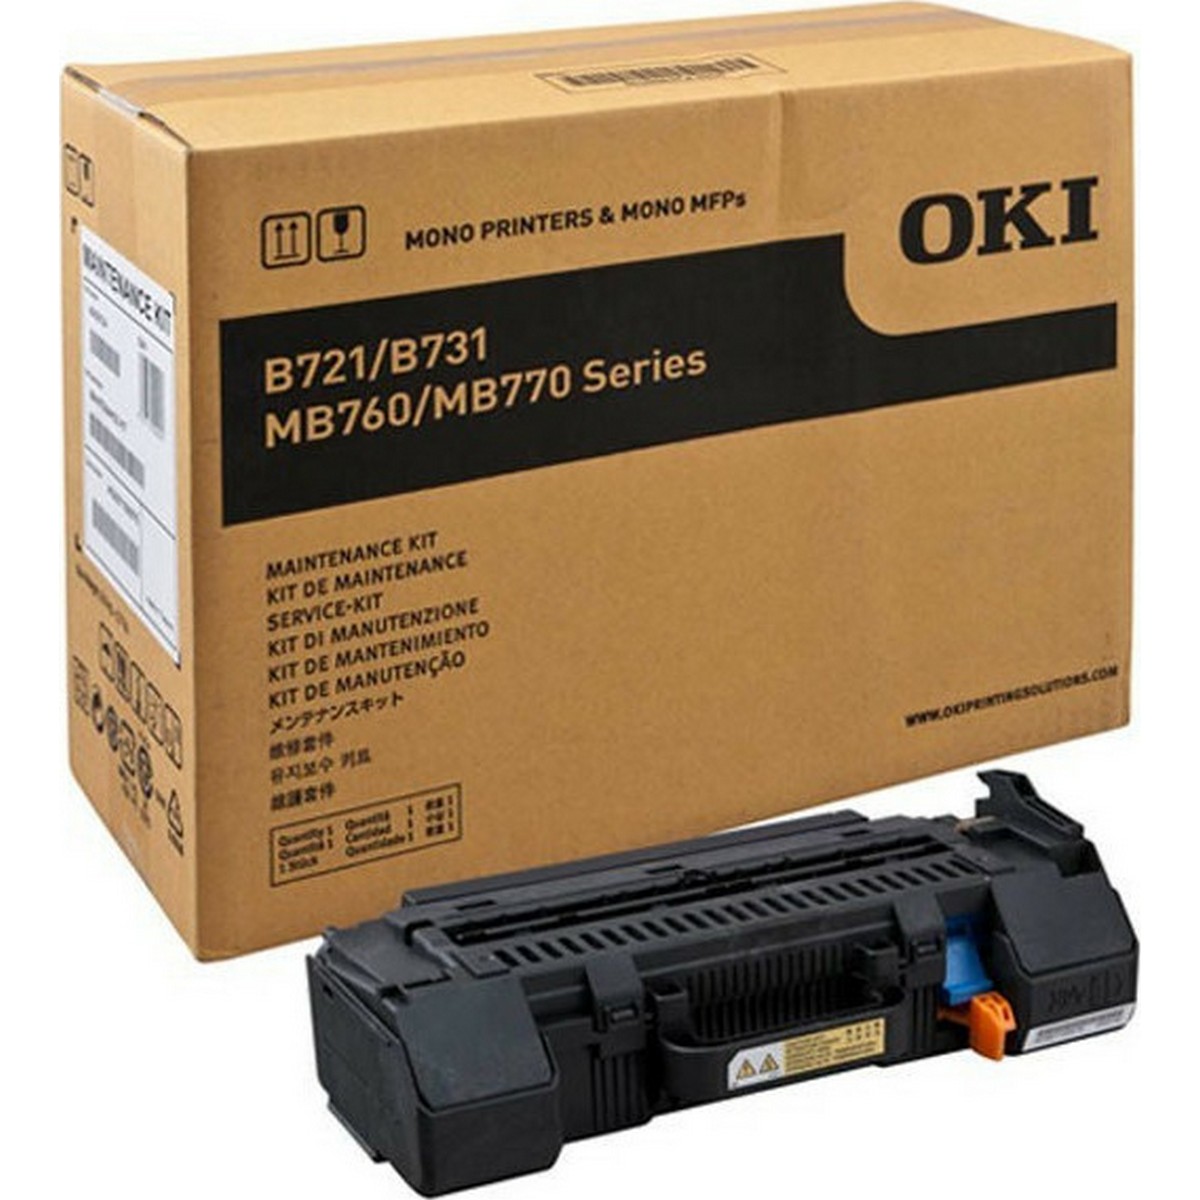 Maintenance kit Oki 4543104 - 200K Pgs